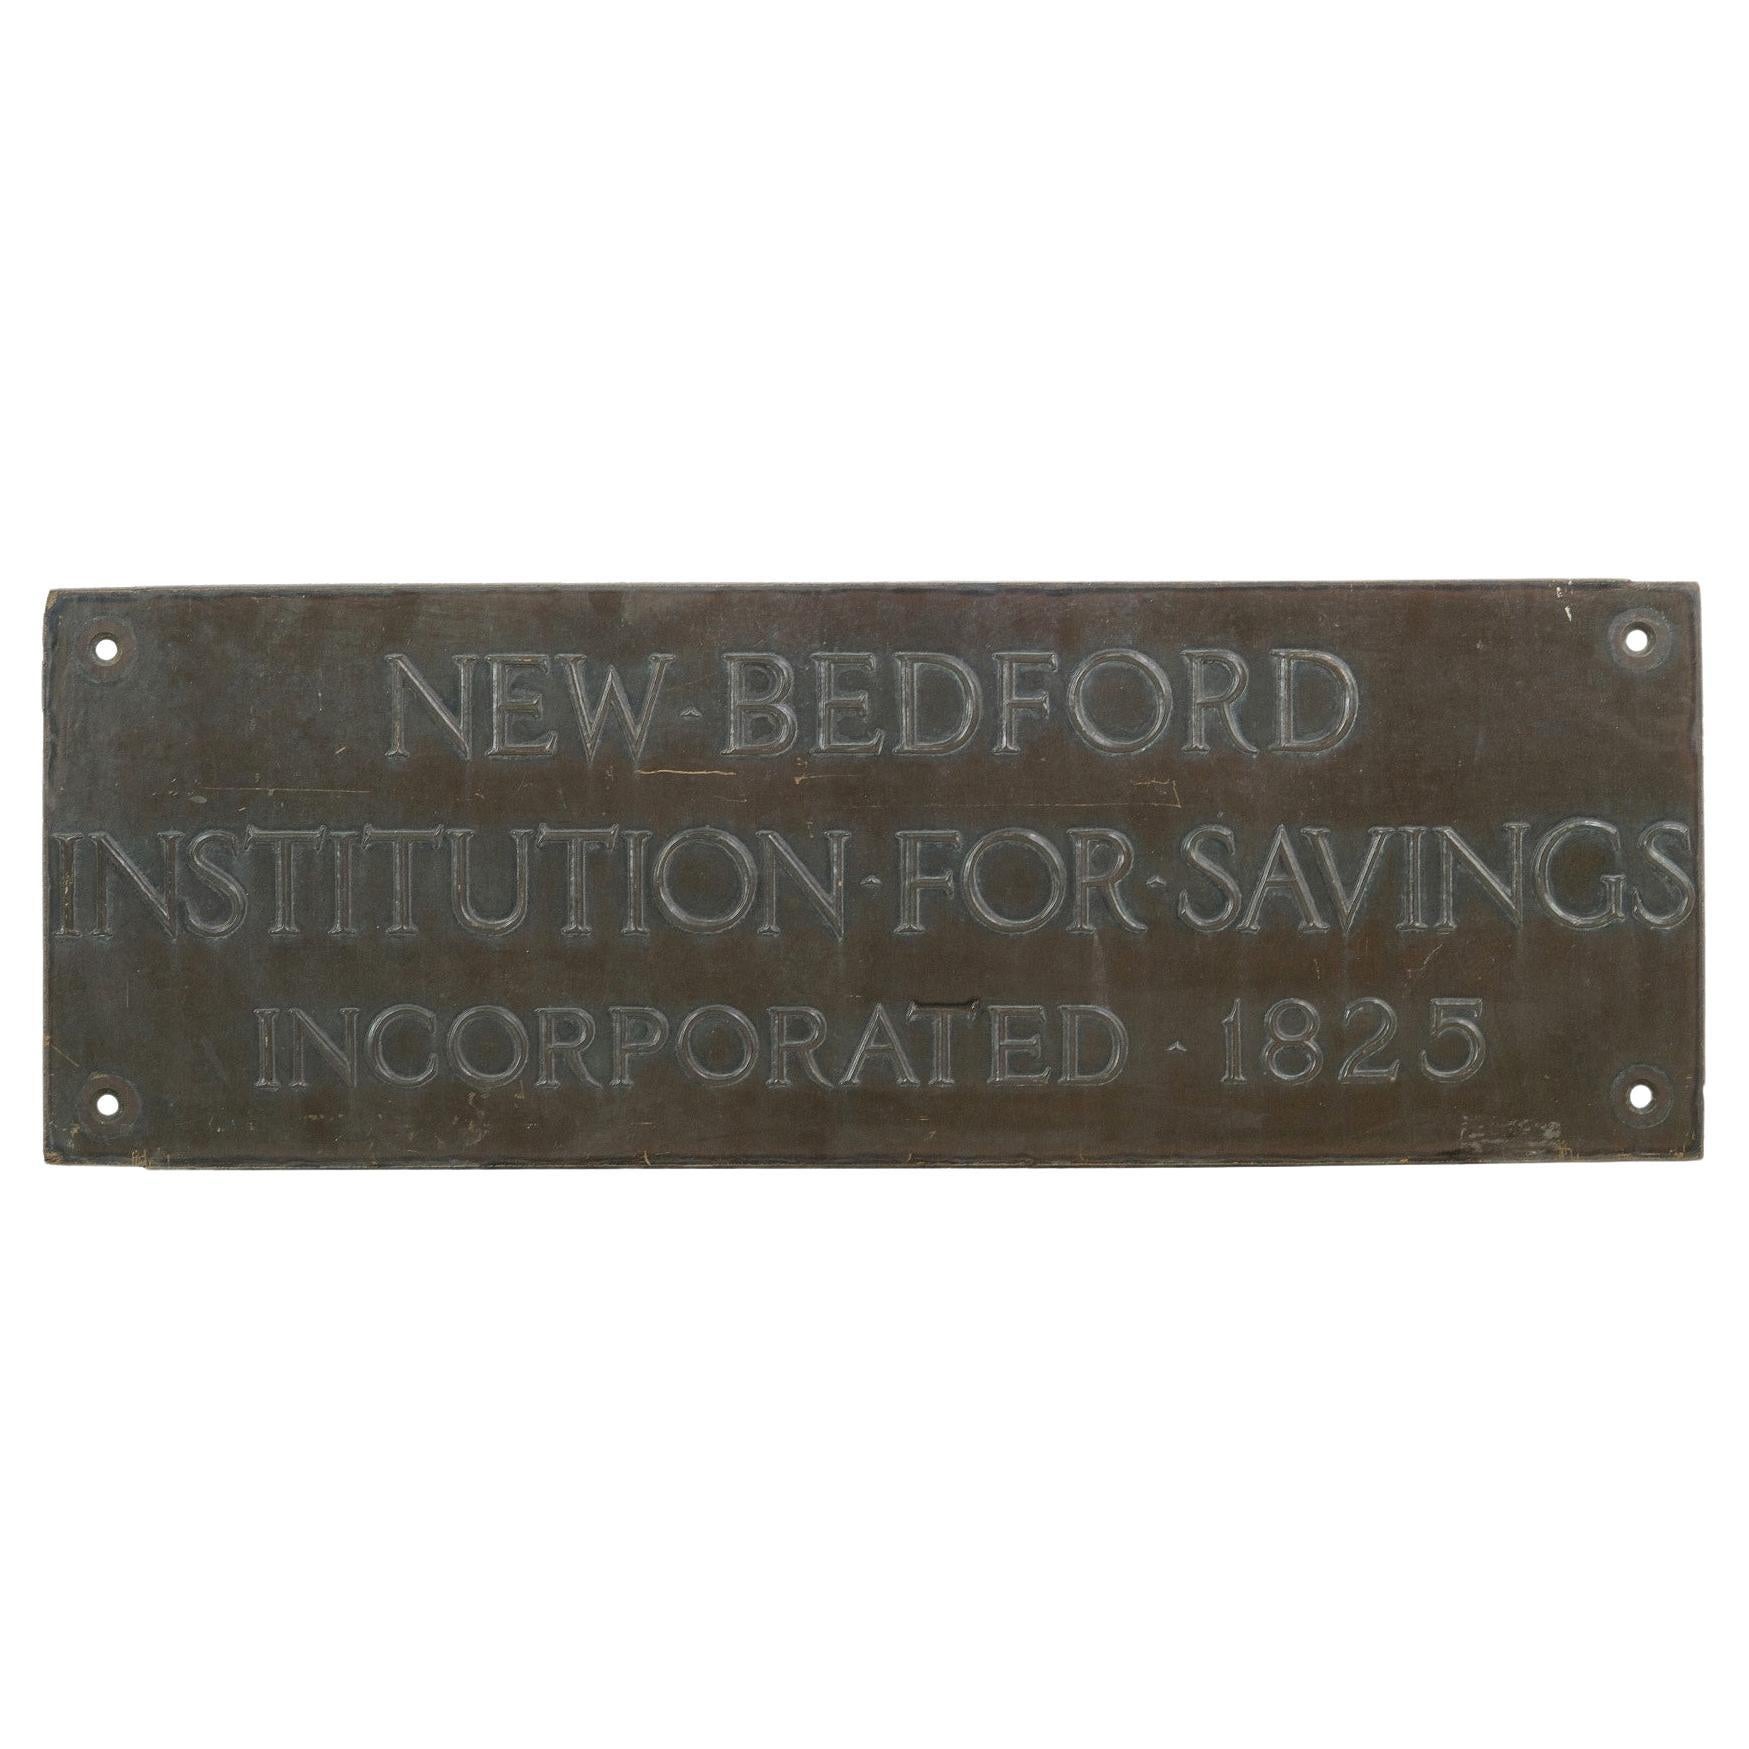 1825 Bronzeplakette von der New Bedford Institution for Savings Incorporated